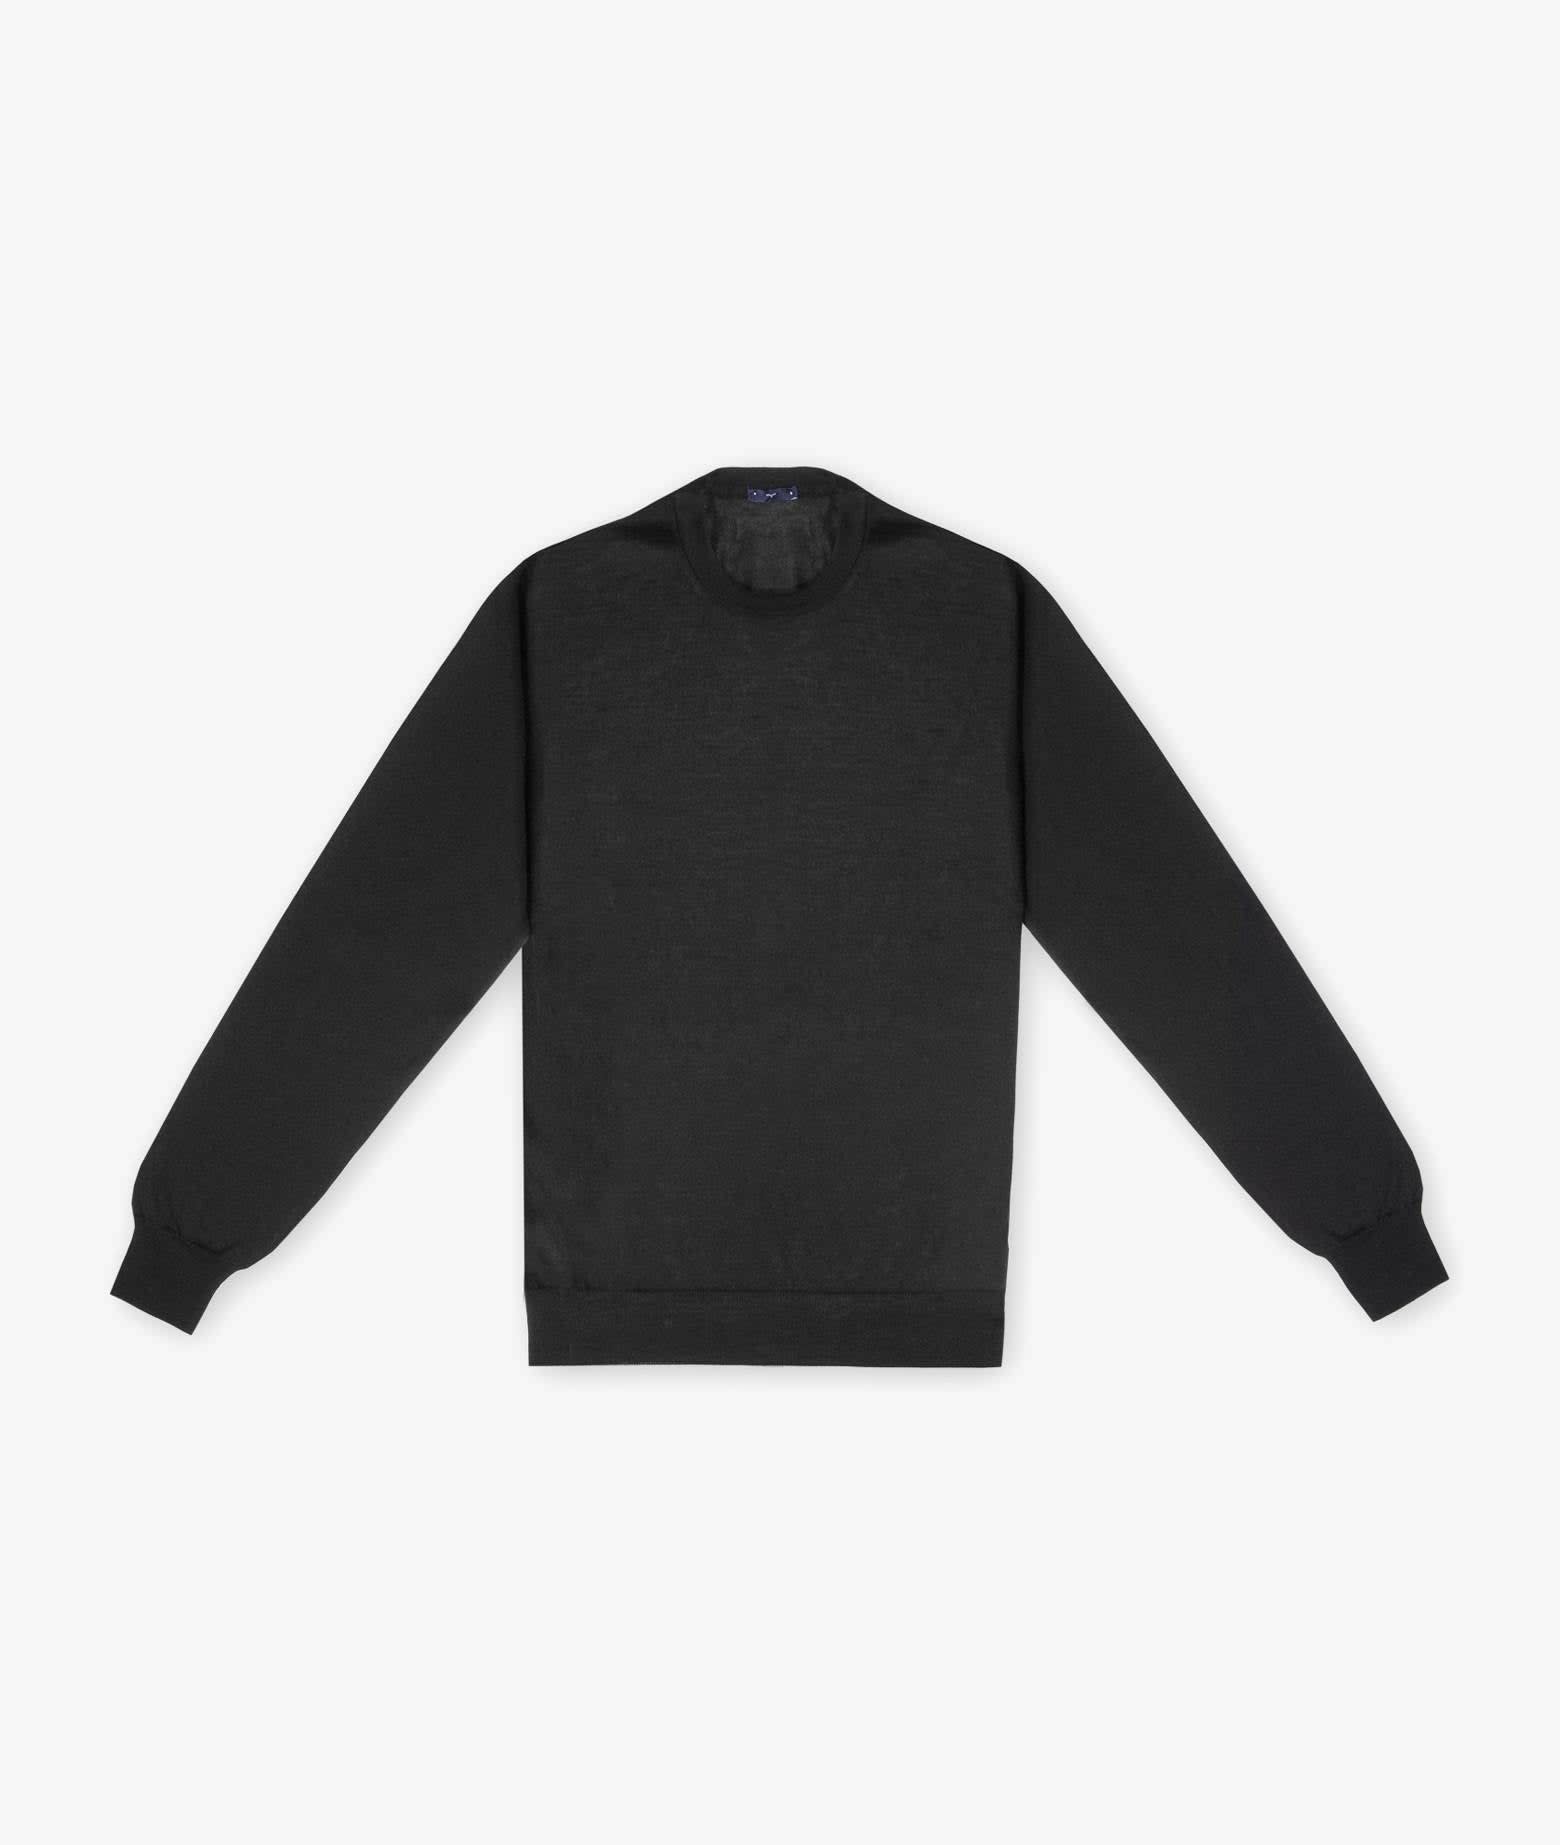 Larusmiani Sweater Pullman Sweater In Black